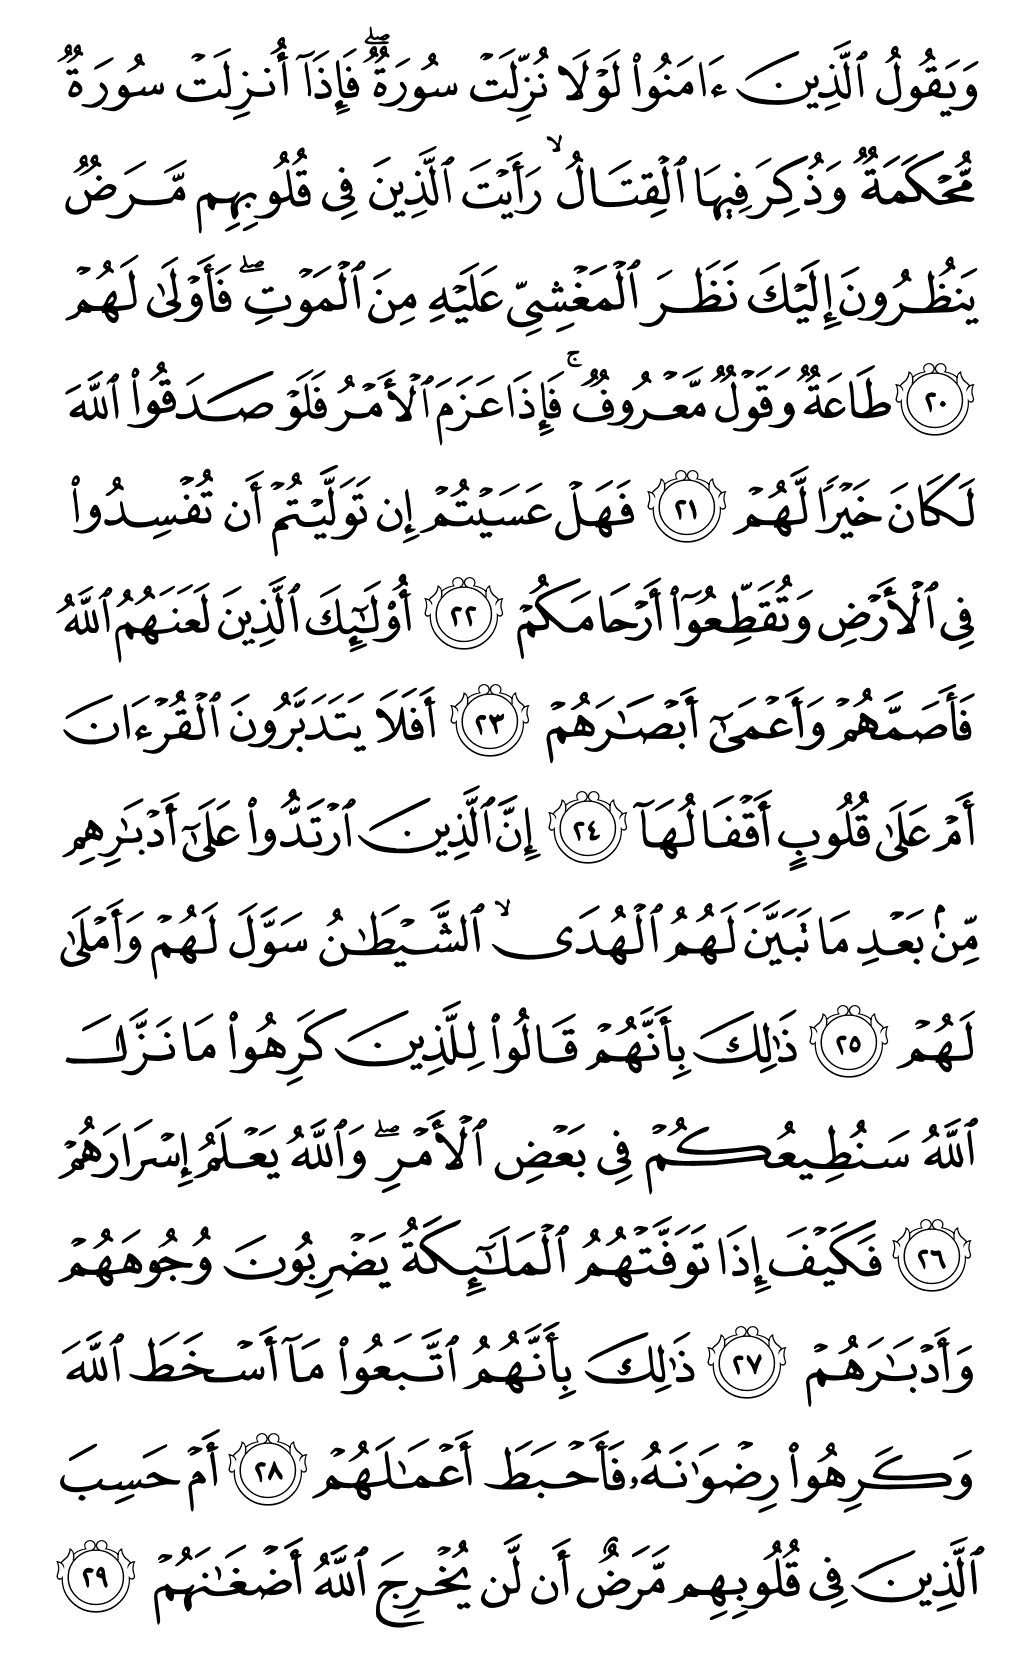 الصفحة رقم 509 من القرآن الكريم